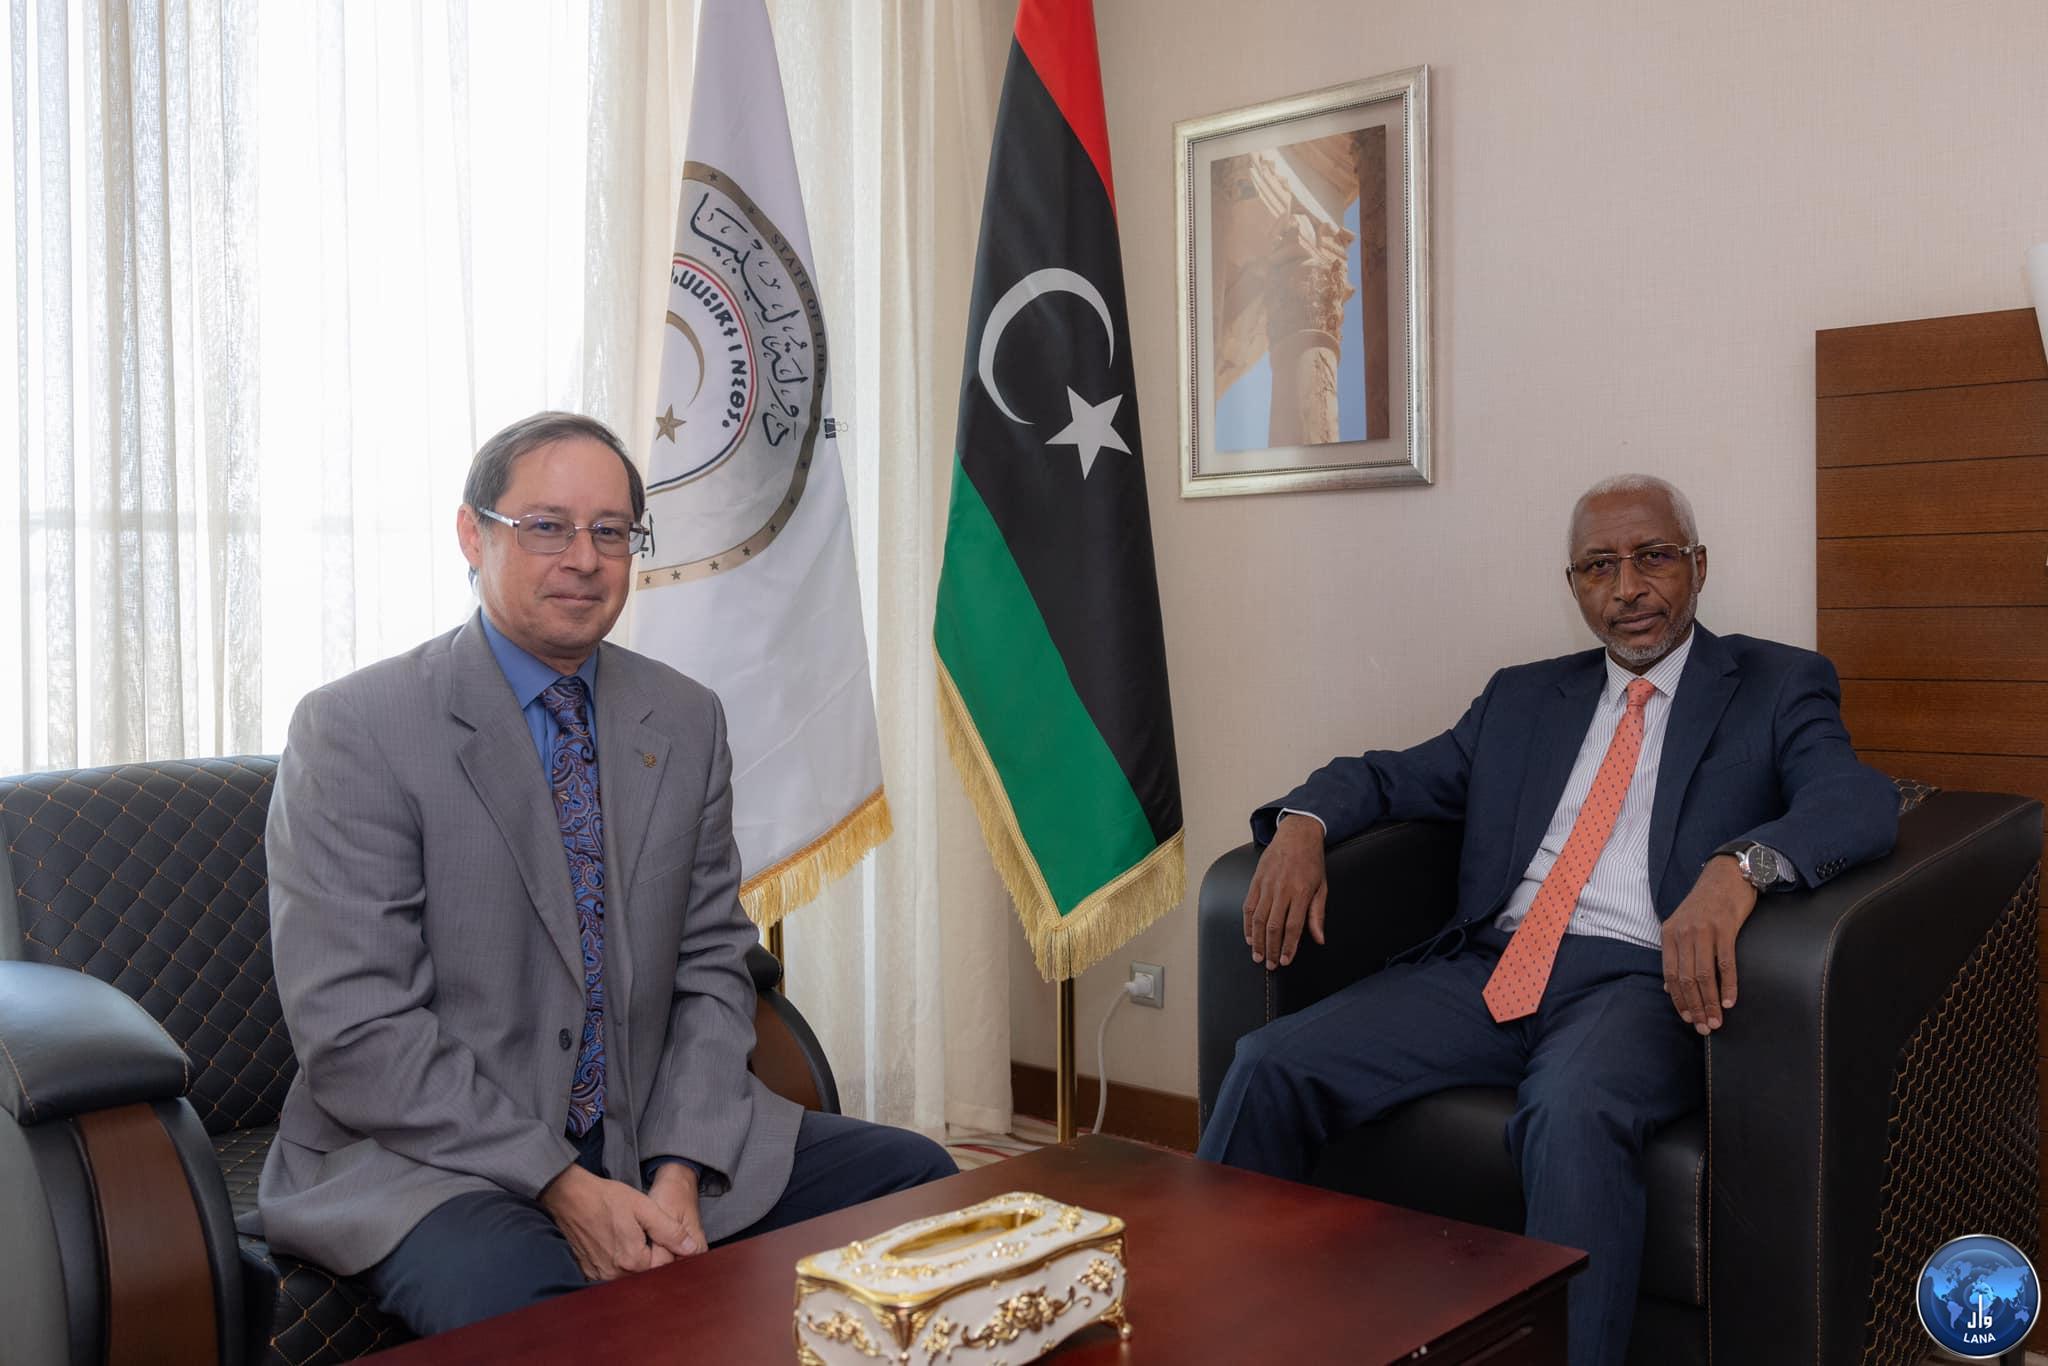  النائب الأول لرئيس مجلس الدولة يلتقي السفير الروسي لدى ليبيا .